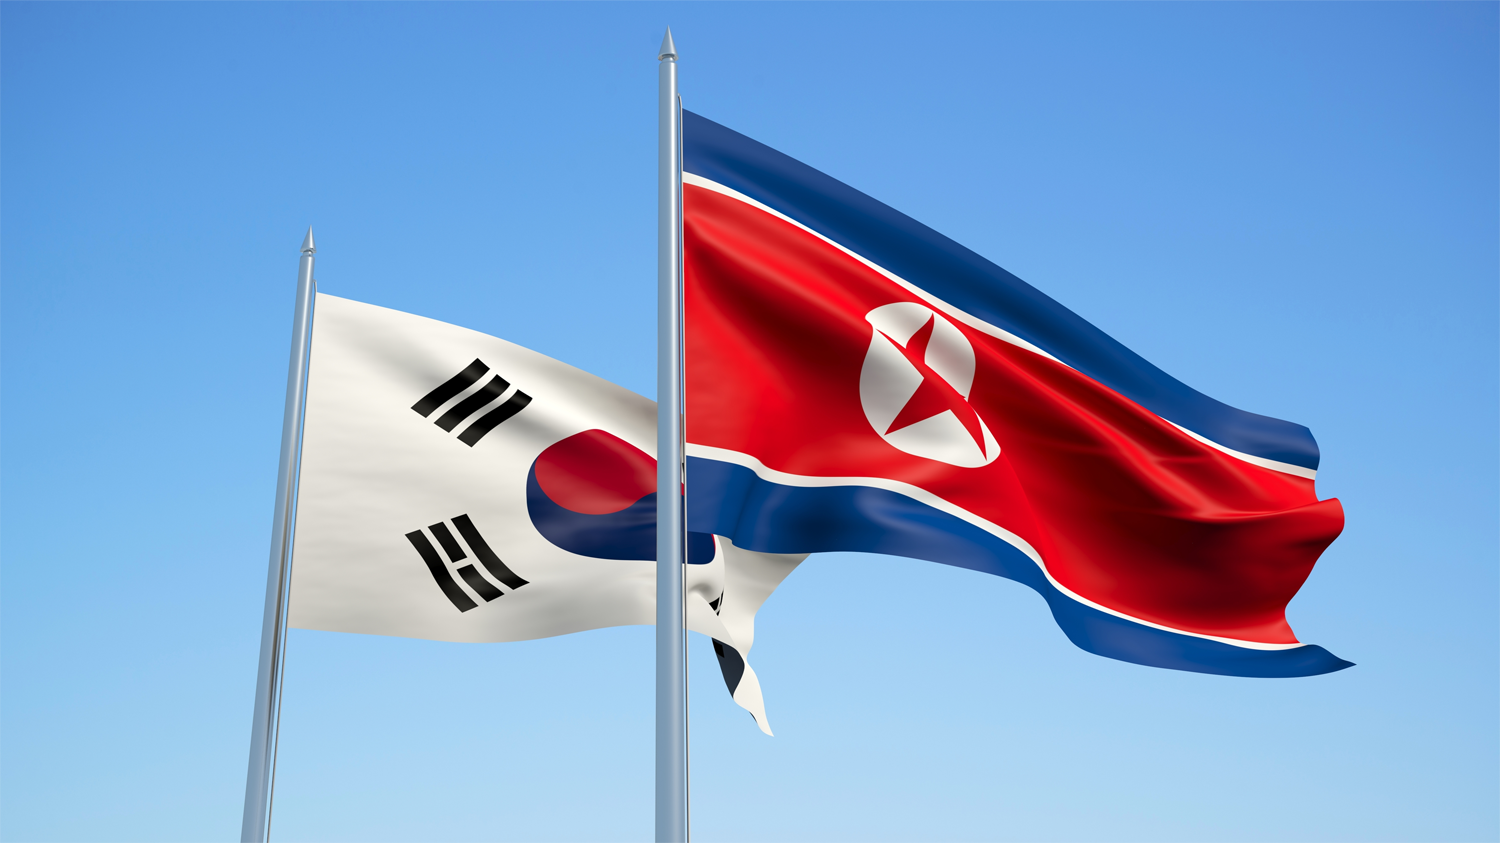 [Global NK 논평] 급진화한 북한 다루기: 문재인 정부와 바이든 행정부의 대북정책 한계와 윤석열 정부의 숙제